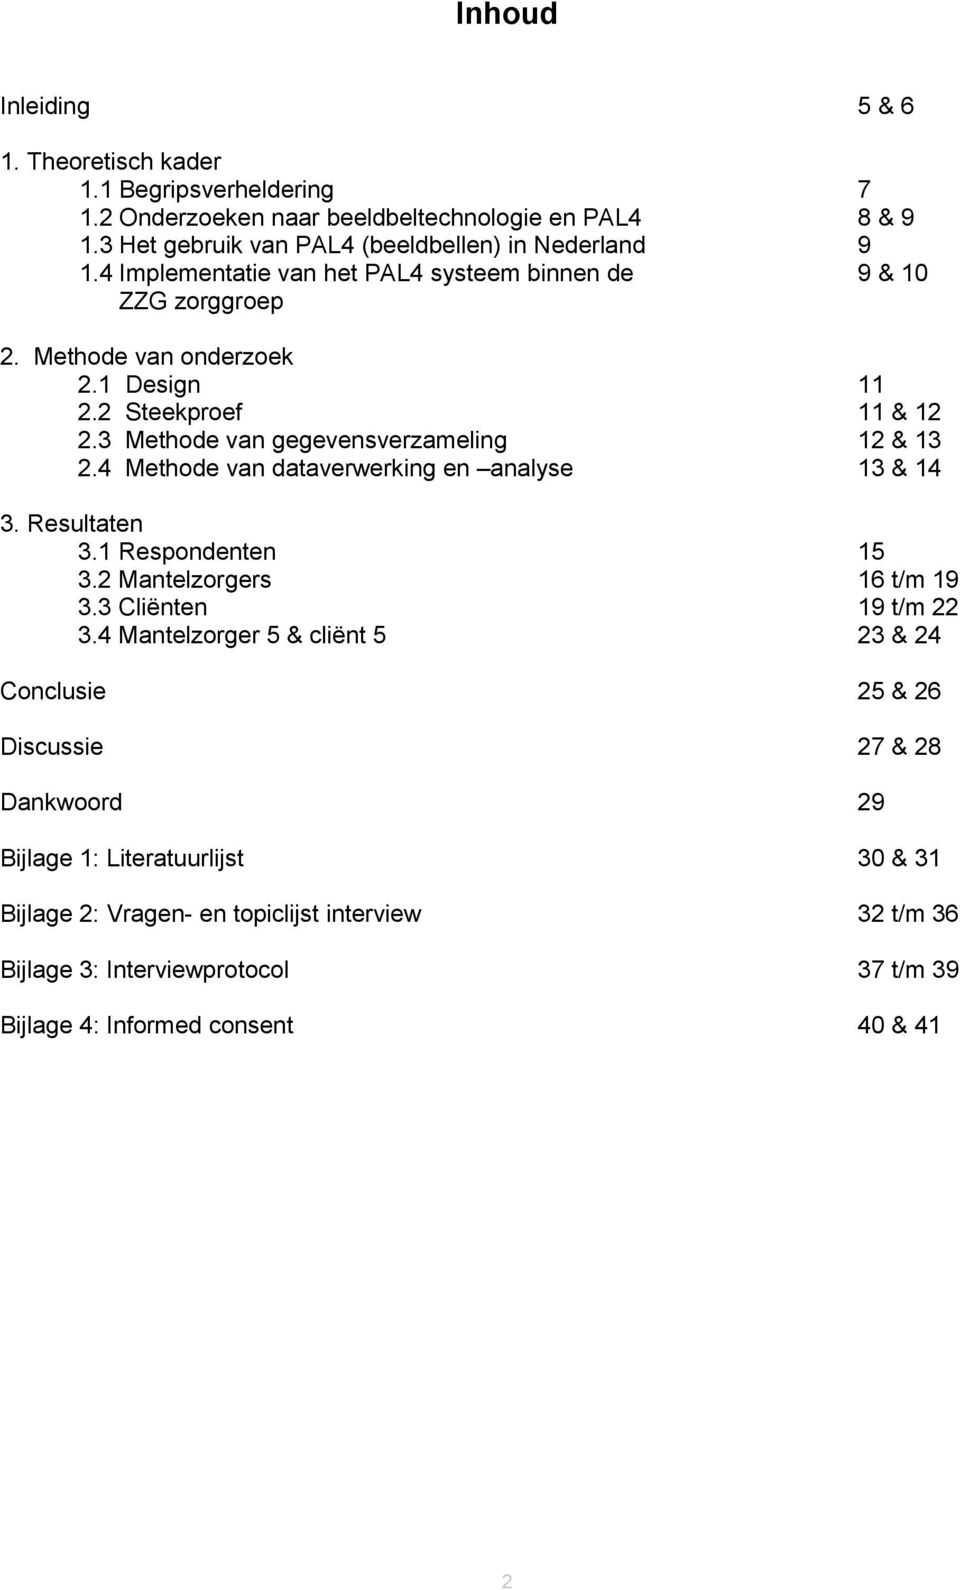 4 Methode van dataverwerking en analyse 13 & 14 3. Resultaten 3.1 Respondenten 15 3.2 Mantelzorgers 16 t/m 19 3.3 Cliënten 19 t/m 22 3.